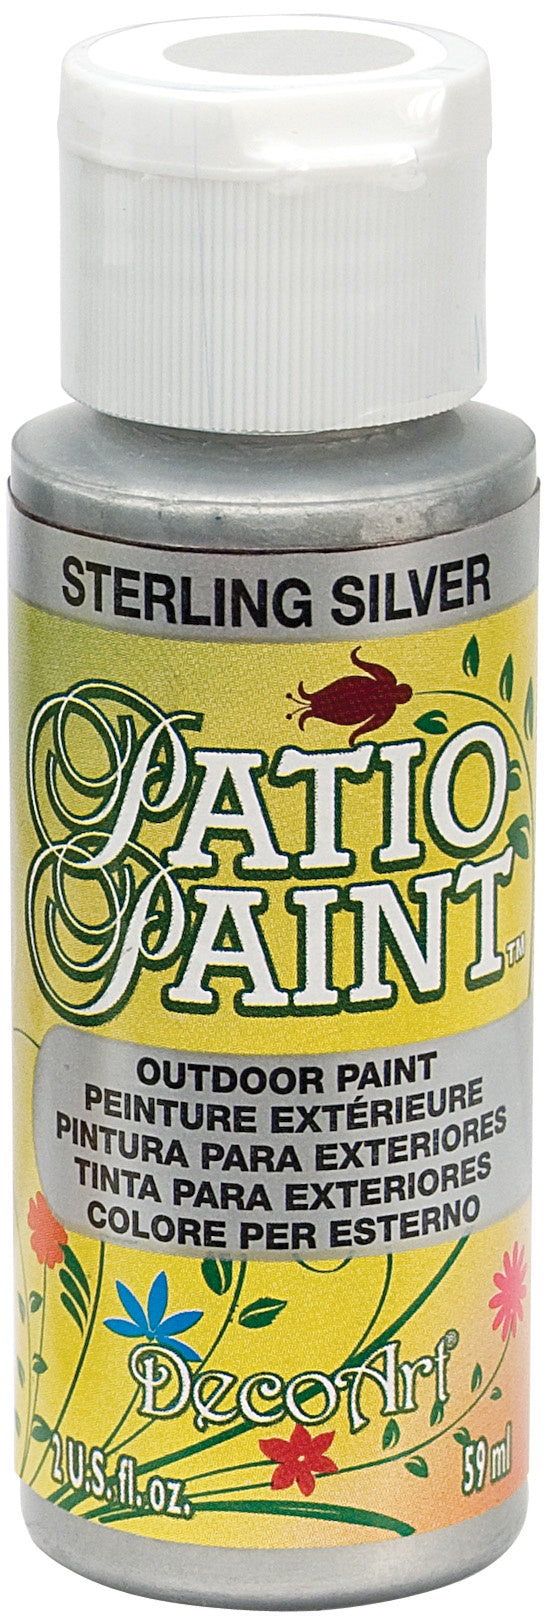 Deco Art Patio Paint 2oz - Sterling Silver